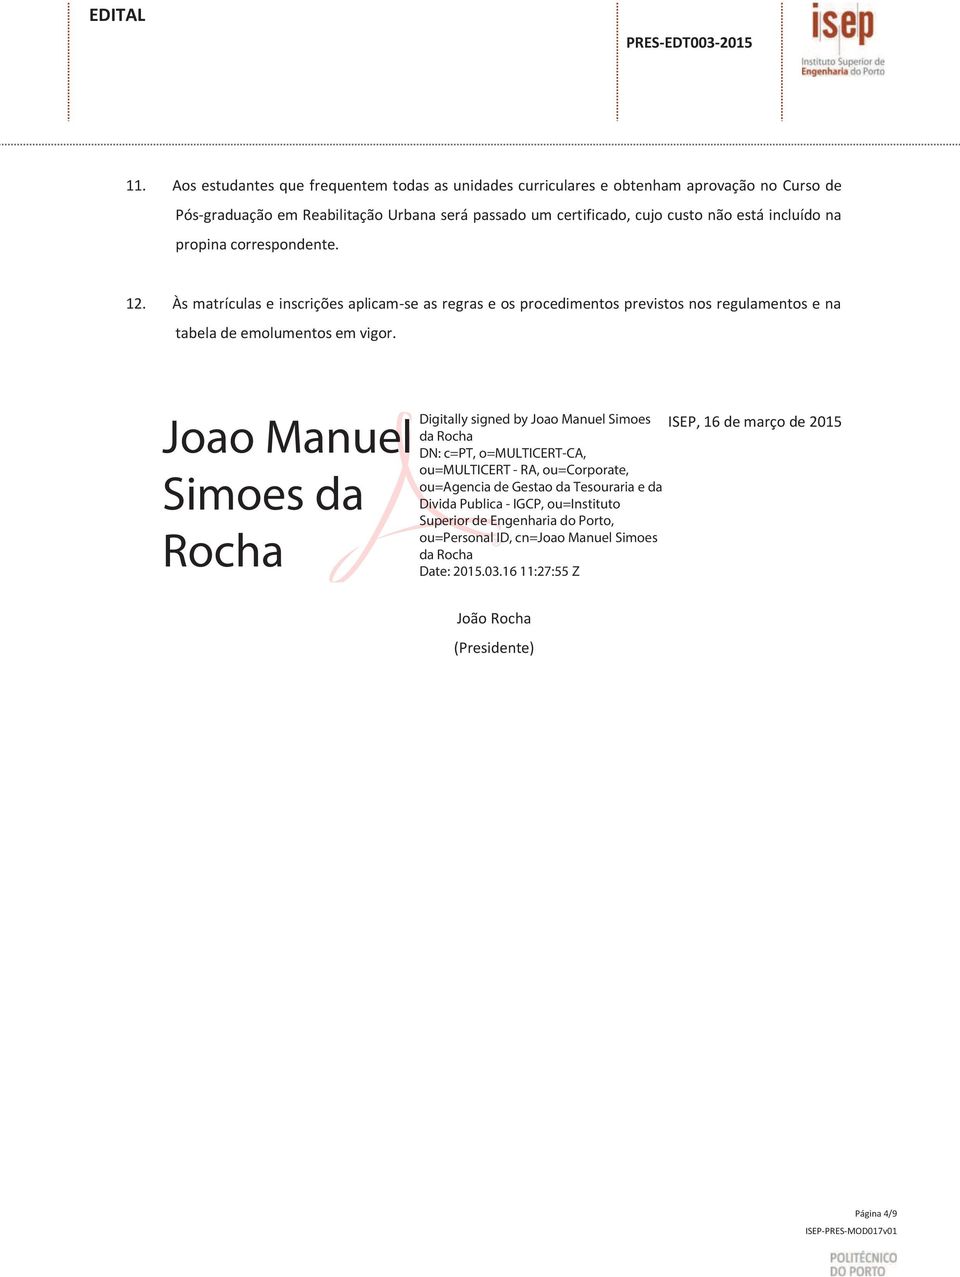 Joao Manuel Simoes da Rocha Digitally signed by Joao Manuel Simoes da Rocha DN: c=pt, o=multicert-ca, ou=multicert - RA, ou=corporate, ou=agencia de Gestao da Tesouraria e da Divida